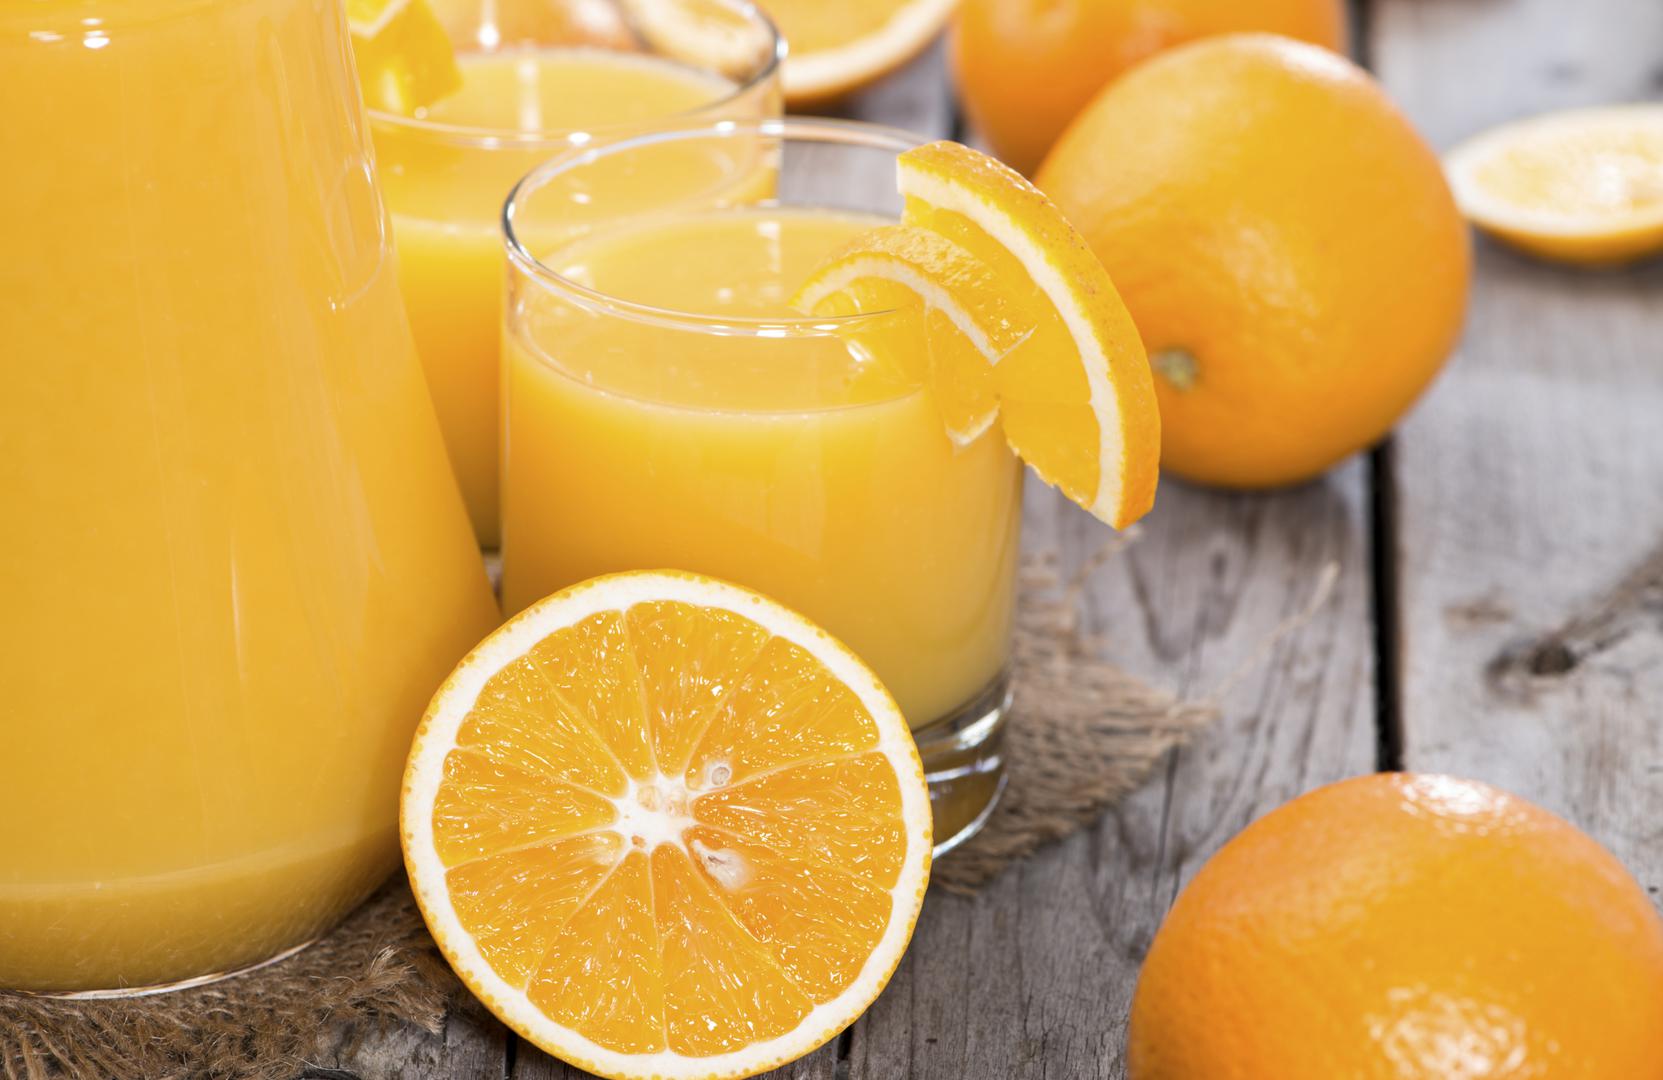 Sok od naranče, osim vitamina C, bit će odlična baza za ukusan, jutarnji sok s kojim ćete započeti dan.